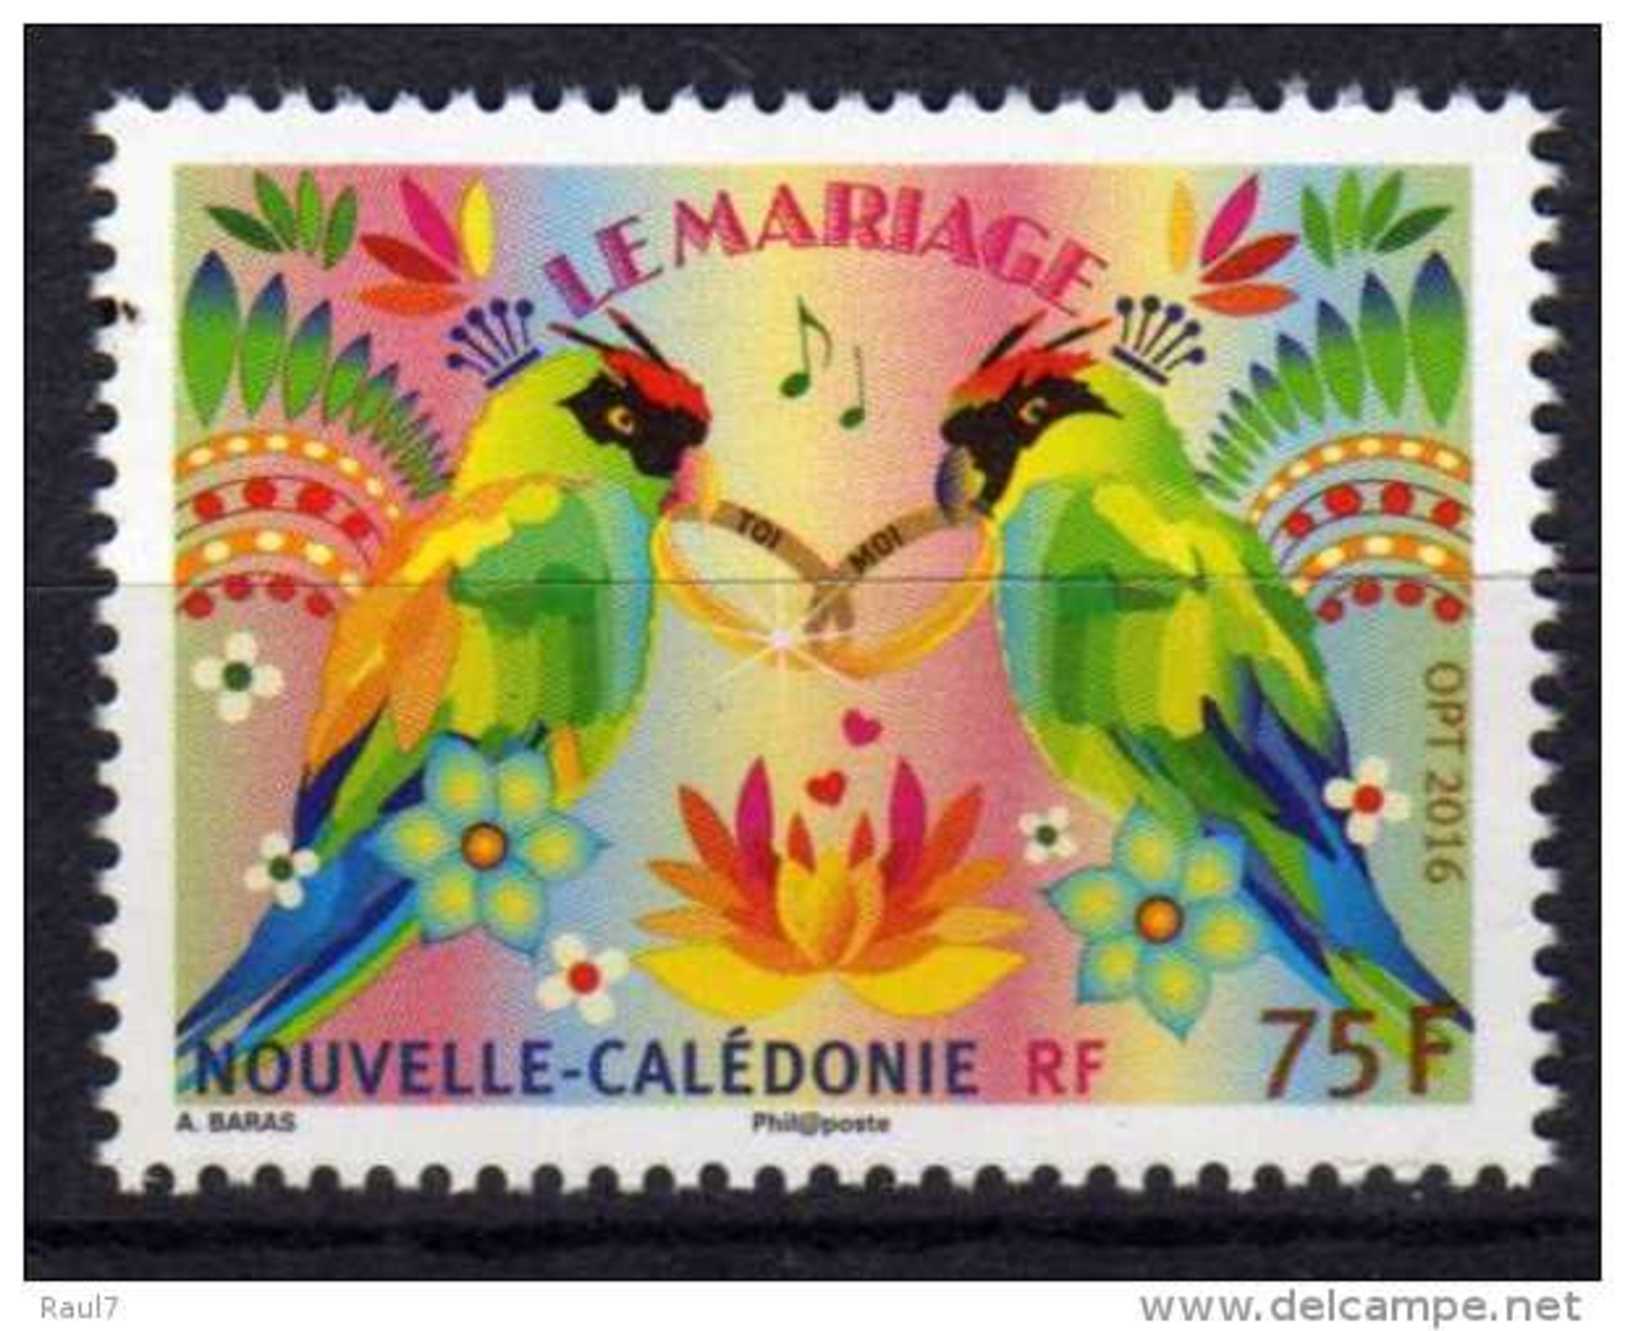 Nouvelle-Calédonie 2016 - Perroquets, Le Mariage - 1val Neufs // Mnh - Neufs